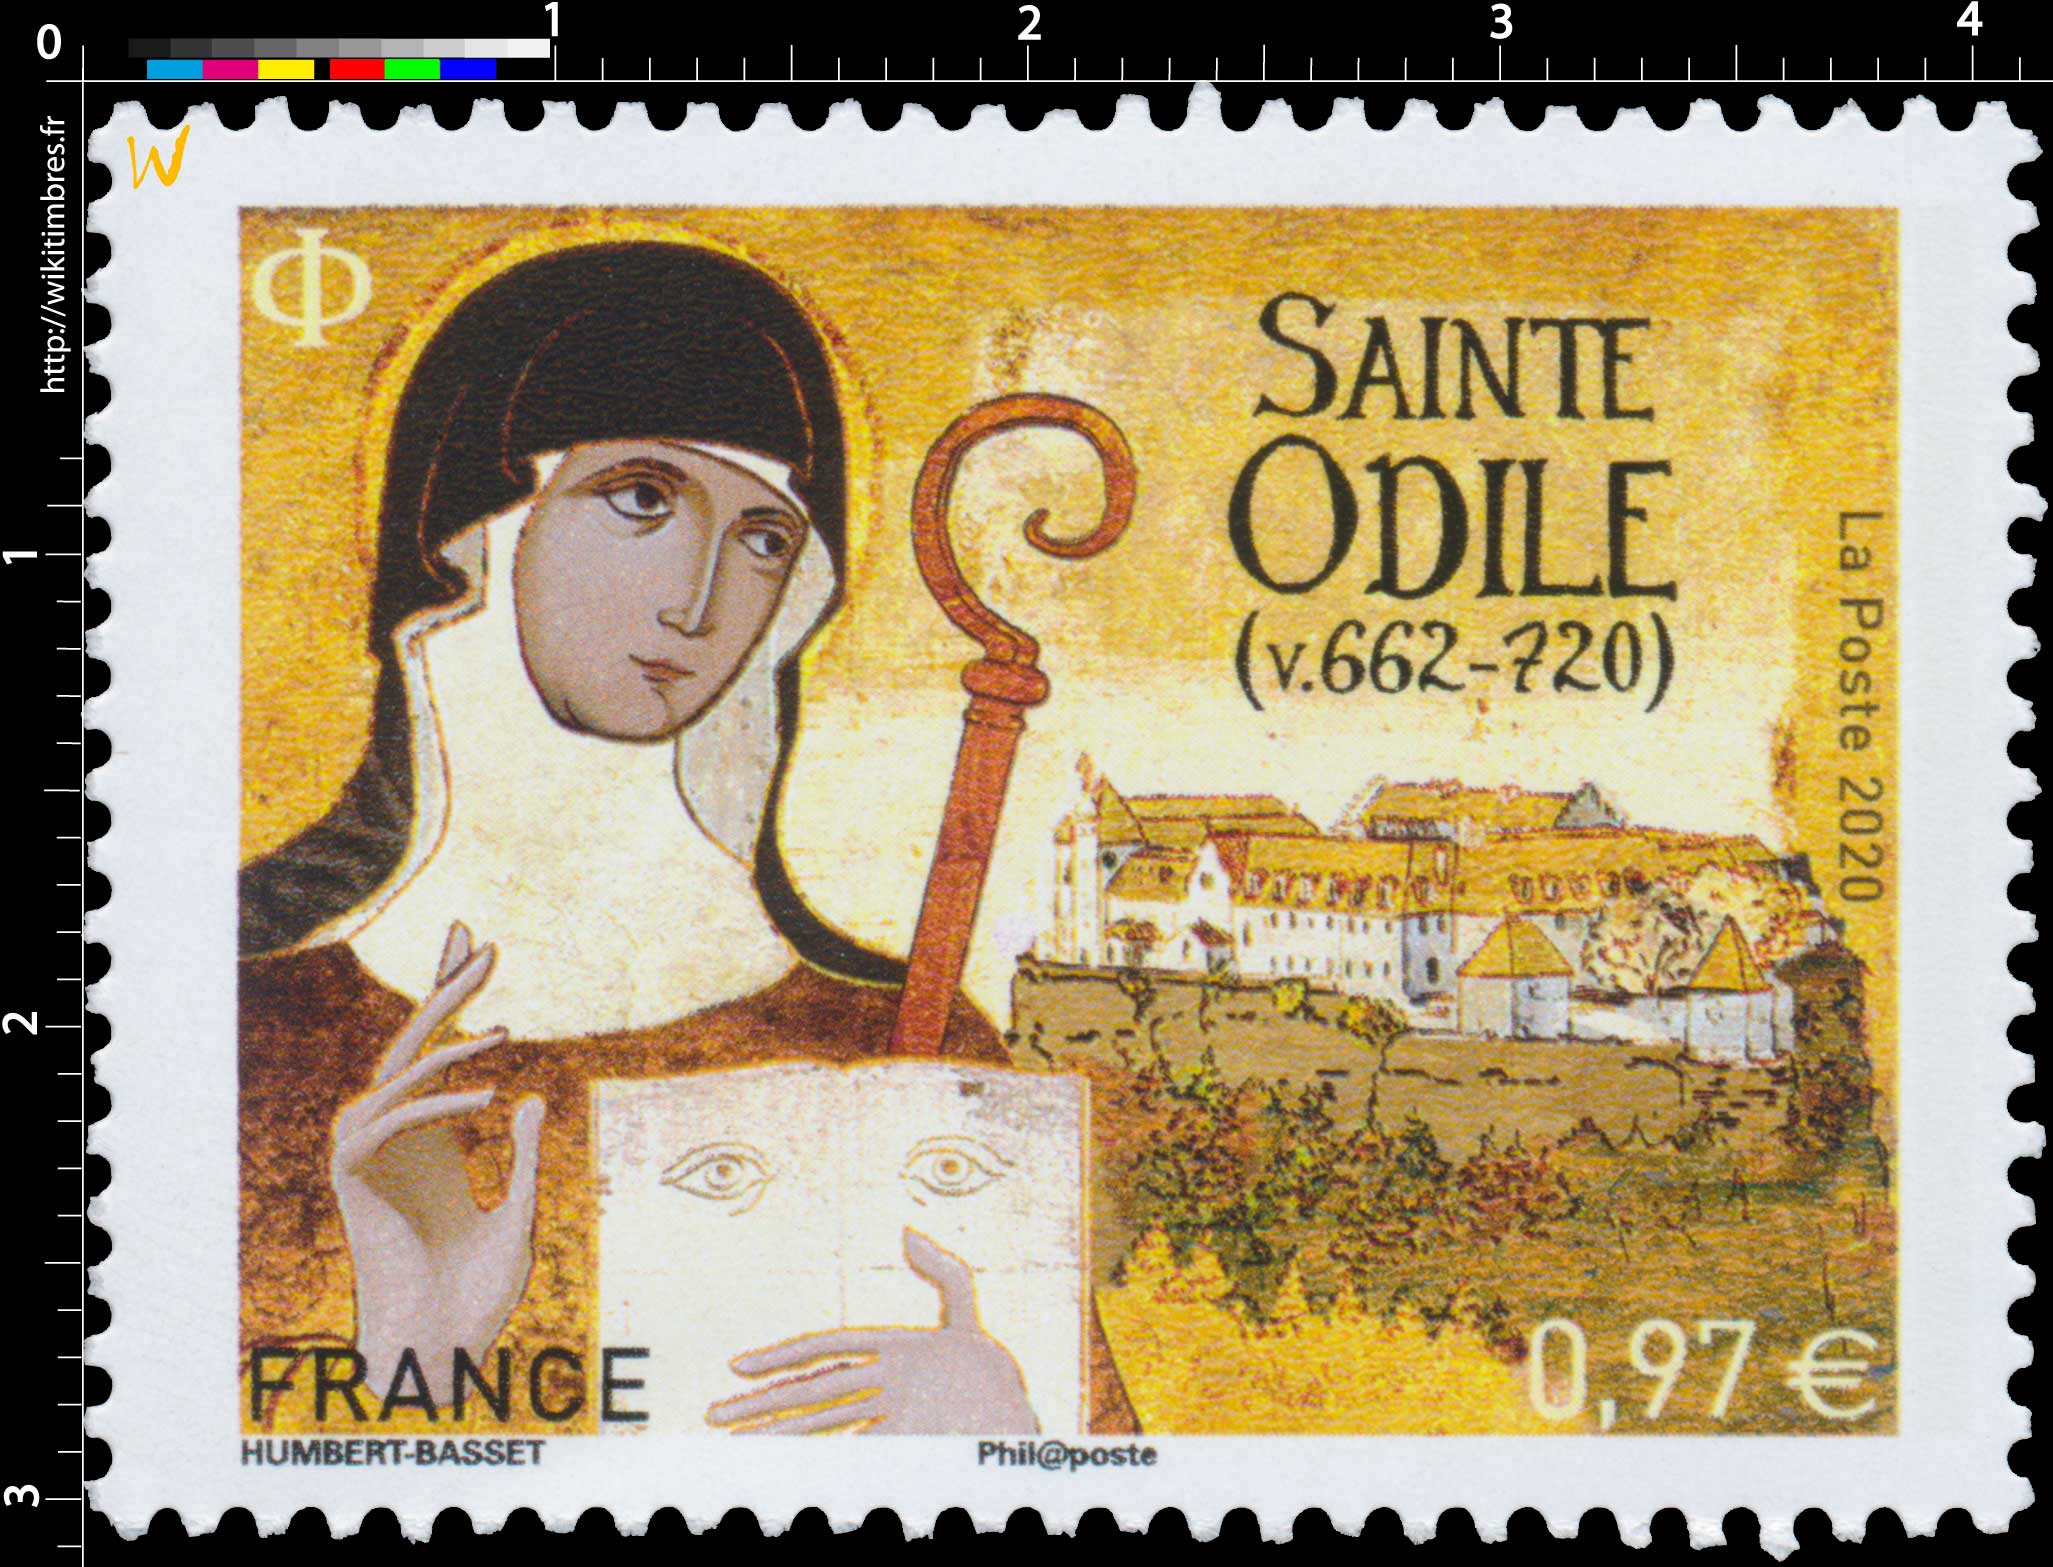 2020 Sainte Odile (v.662-720) 